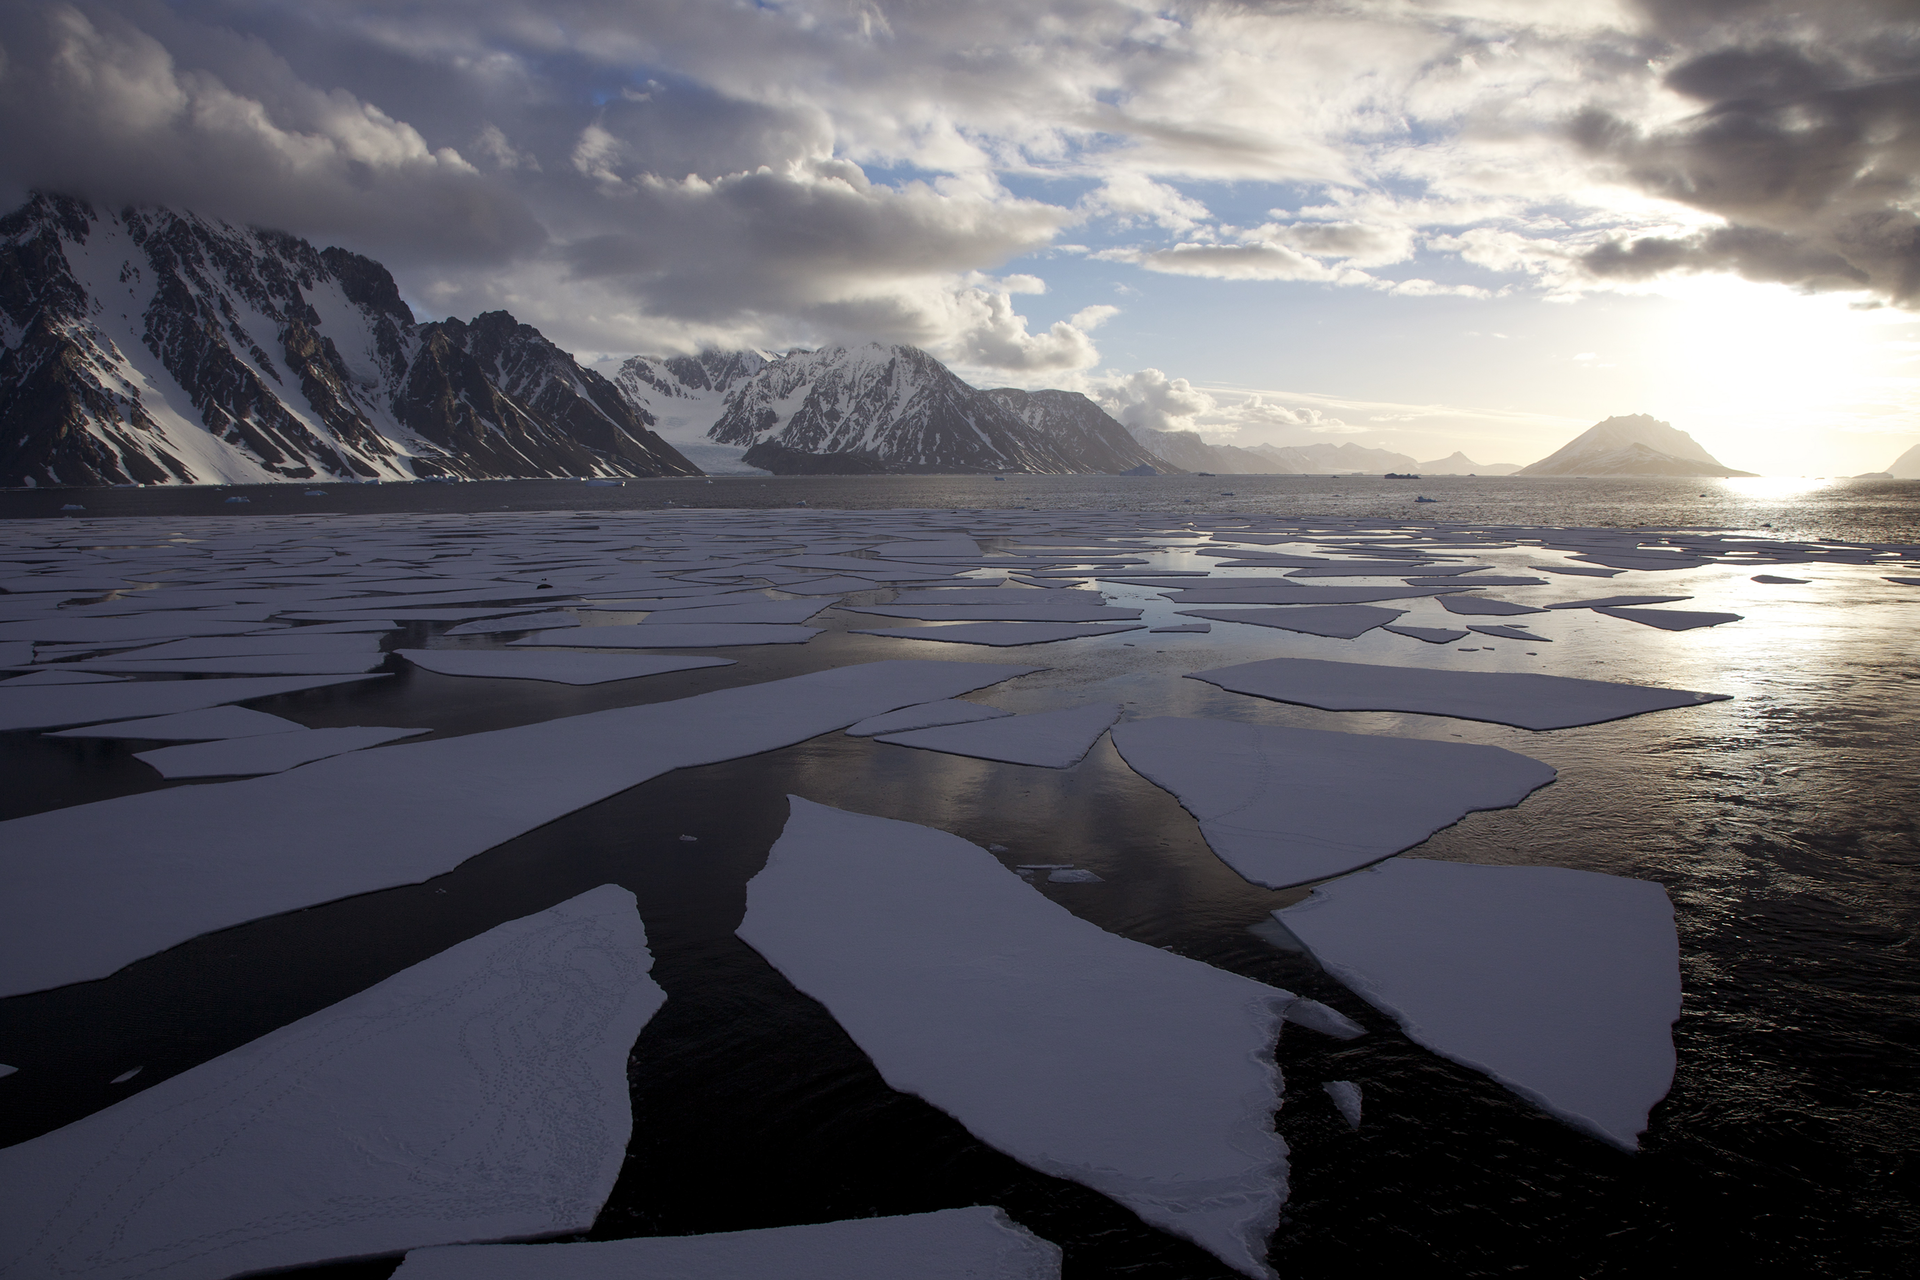 Fotografia prezentuje krajobraz Antarktydy latem. Na pierwszym planie widoczna kra pływająca po morzu. W tle góry pokryte częściowo śniegiem, nad nimi kłębiaste chmury oraz słońce nad horyzontem.